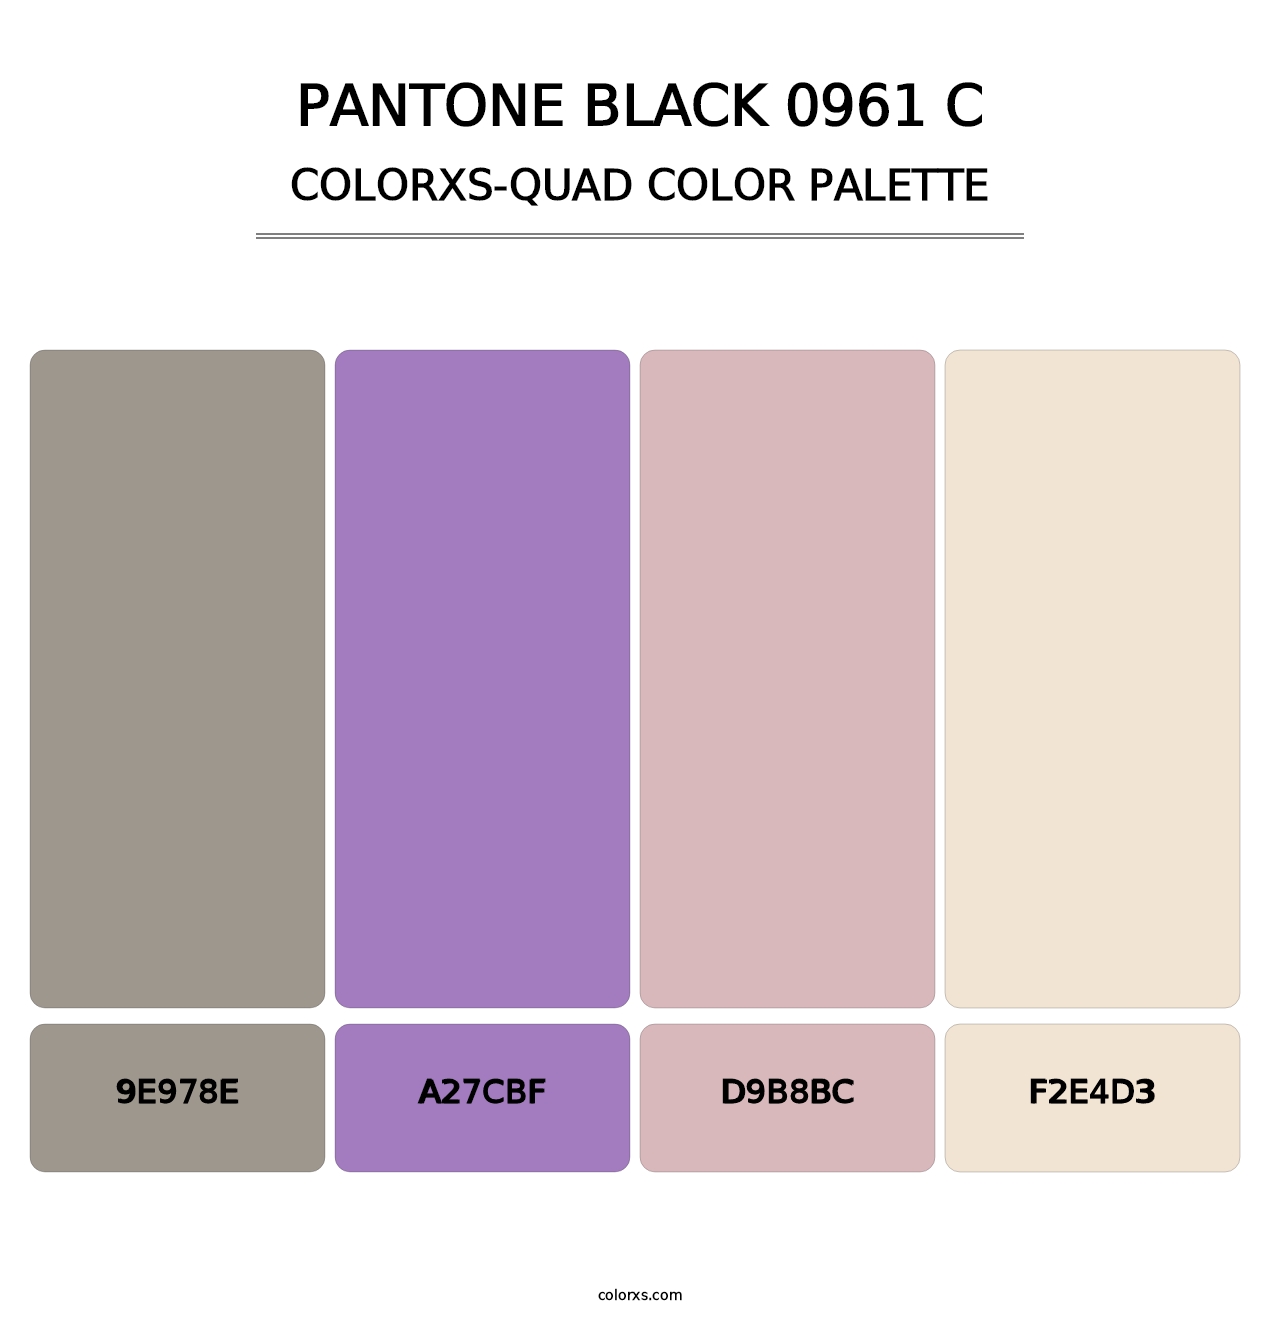 PANTONE Black 0961 C - Colorxs Quad Palette